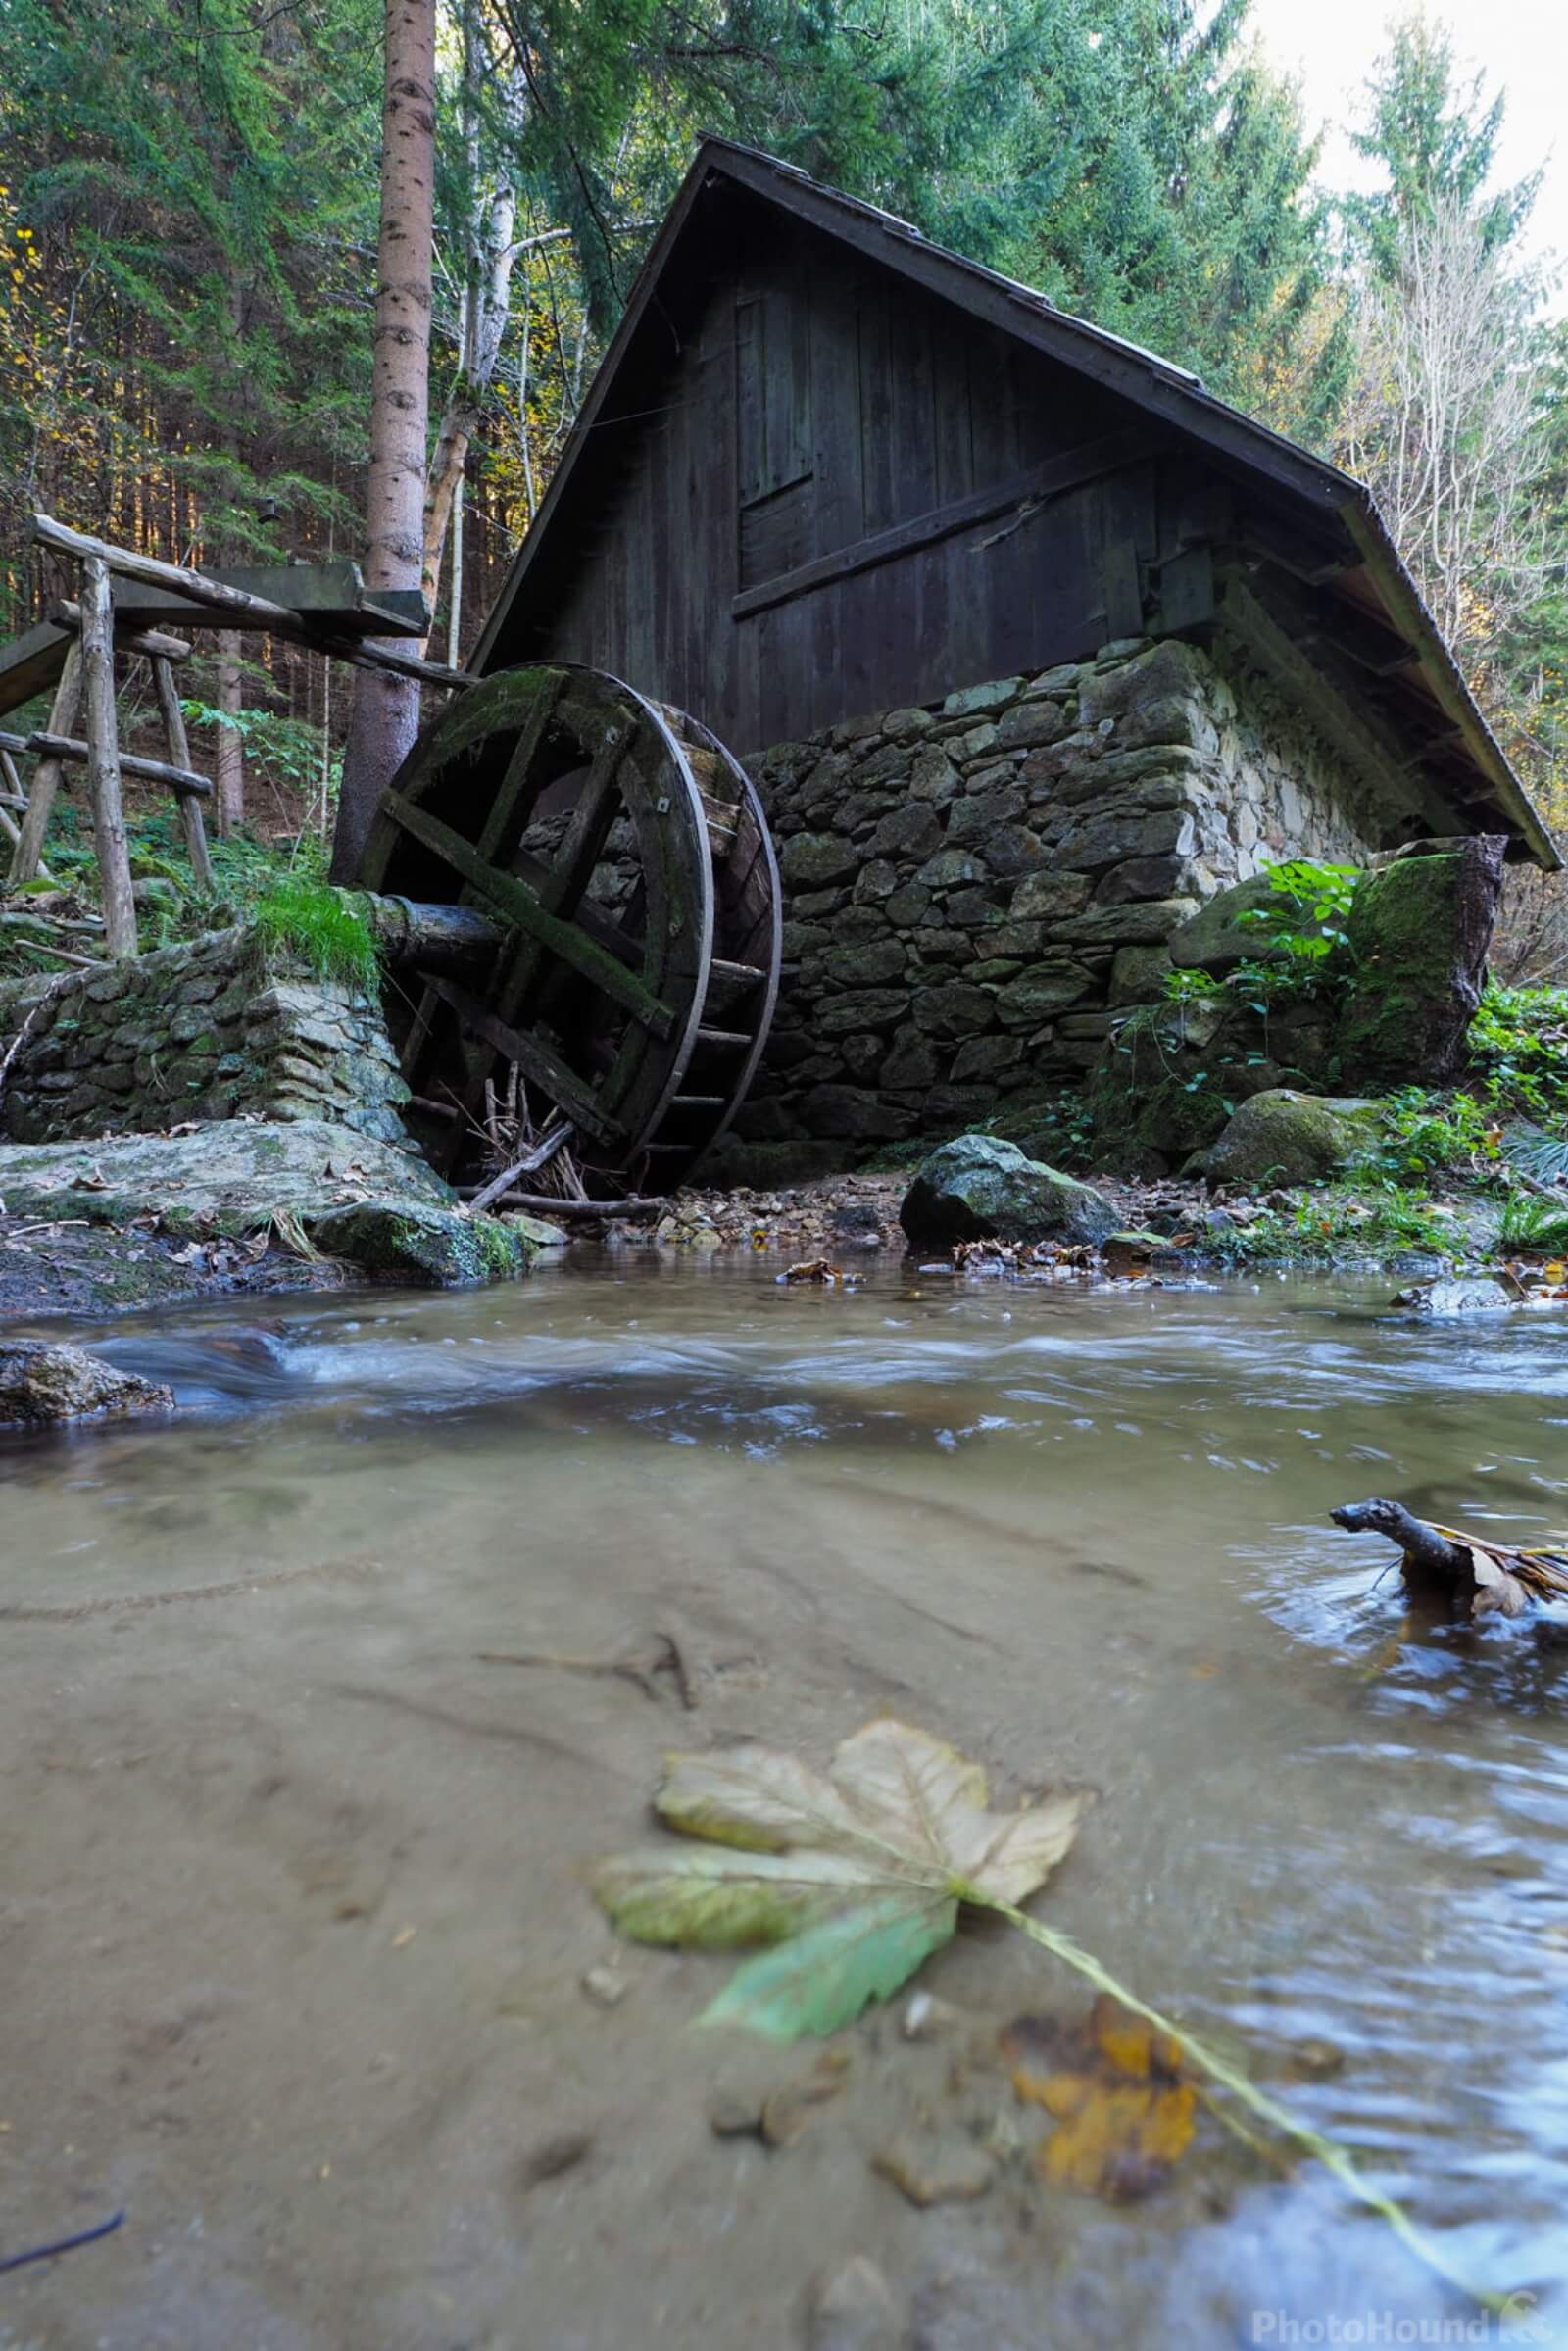 Image of Jakec Mill, Slovenia by Saša Jamšek